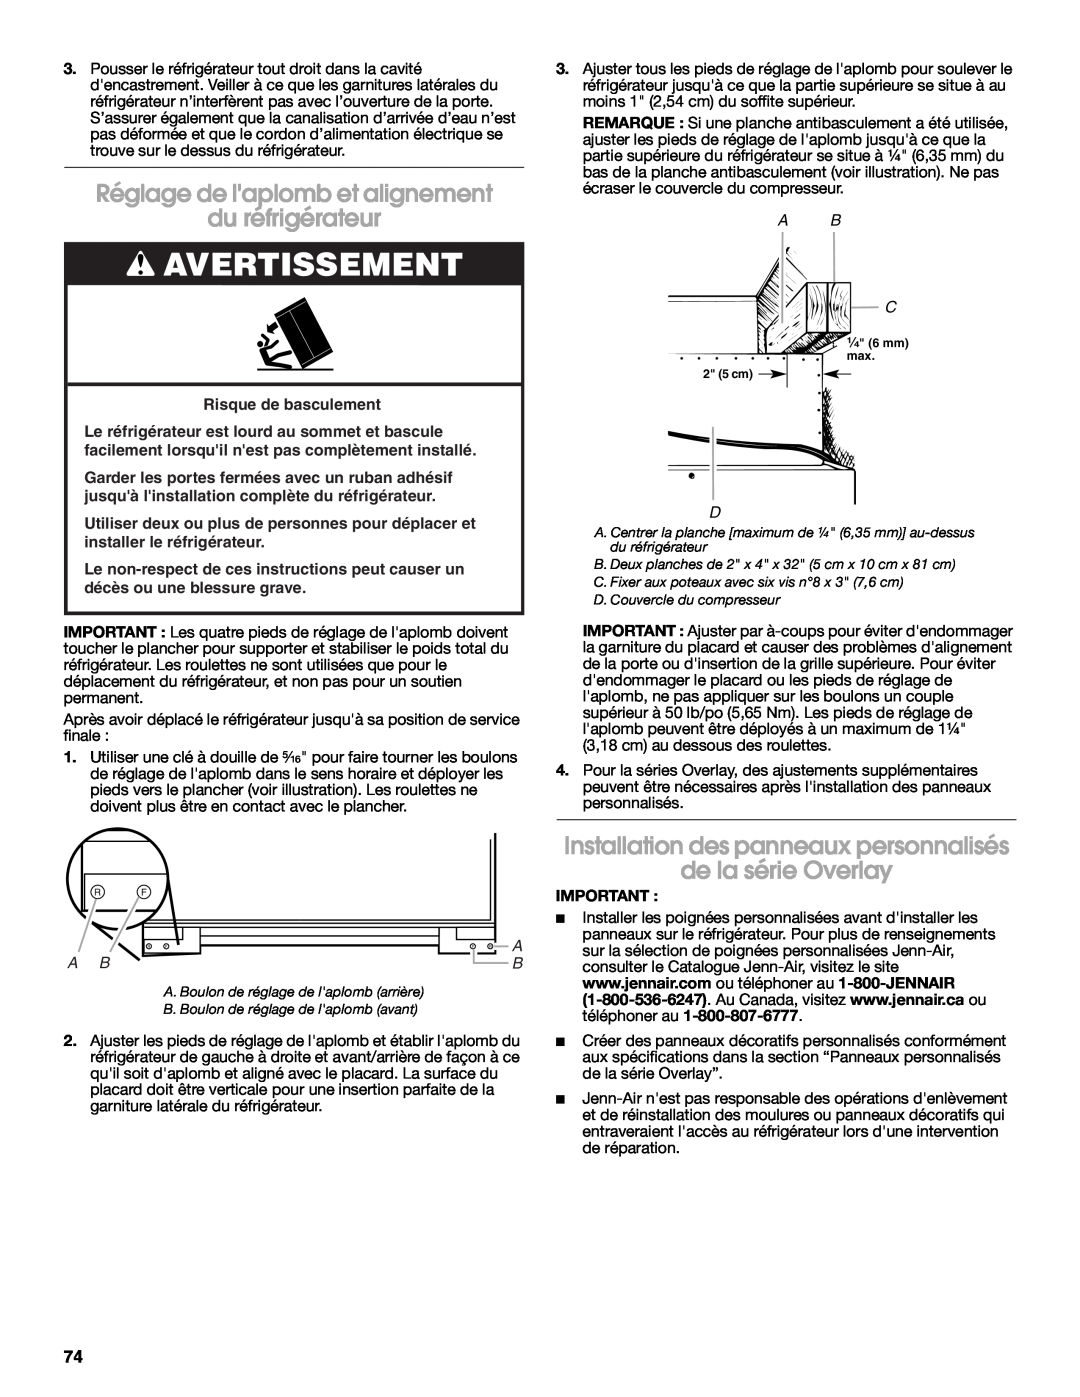 Jenn-Air W10183782A manual Réglage de laplomb et alignement du réfrigérateur, Avertissement 